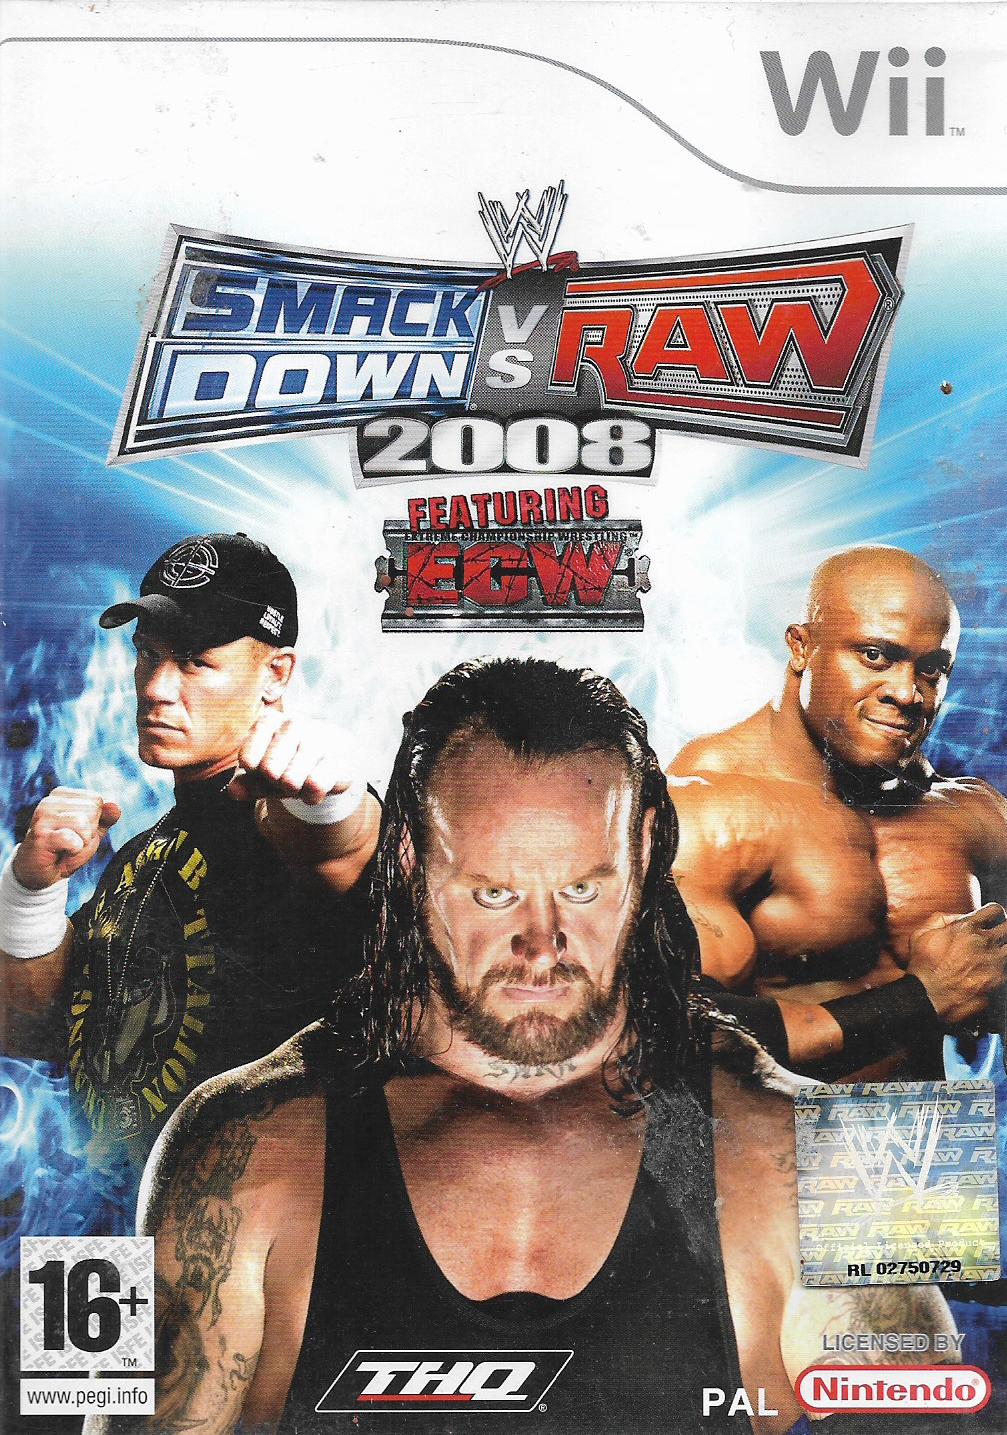 WWE SMACKDOWN VS RAW 2008 (WII - BAZAR)